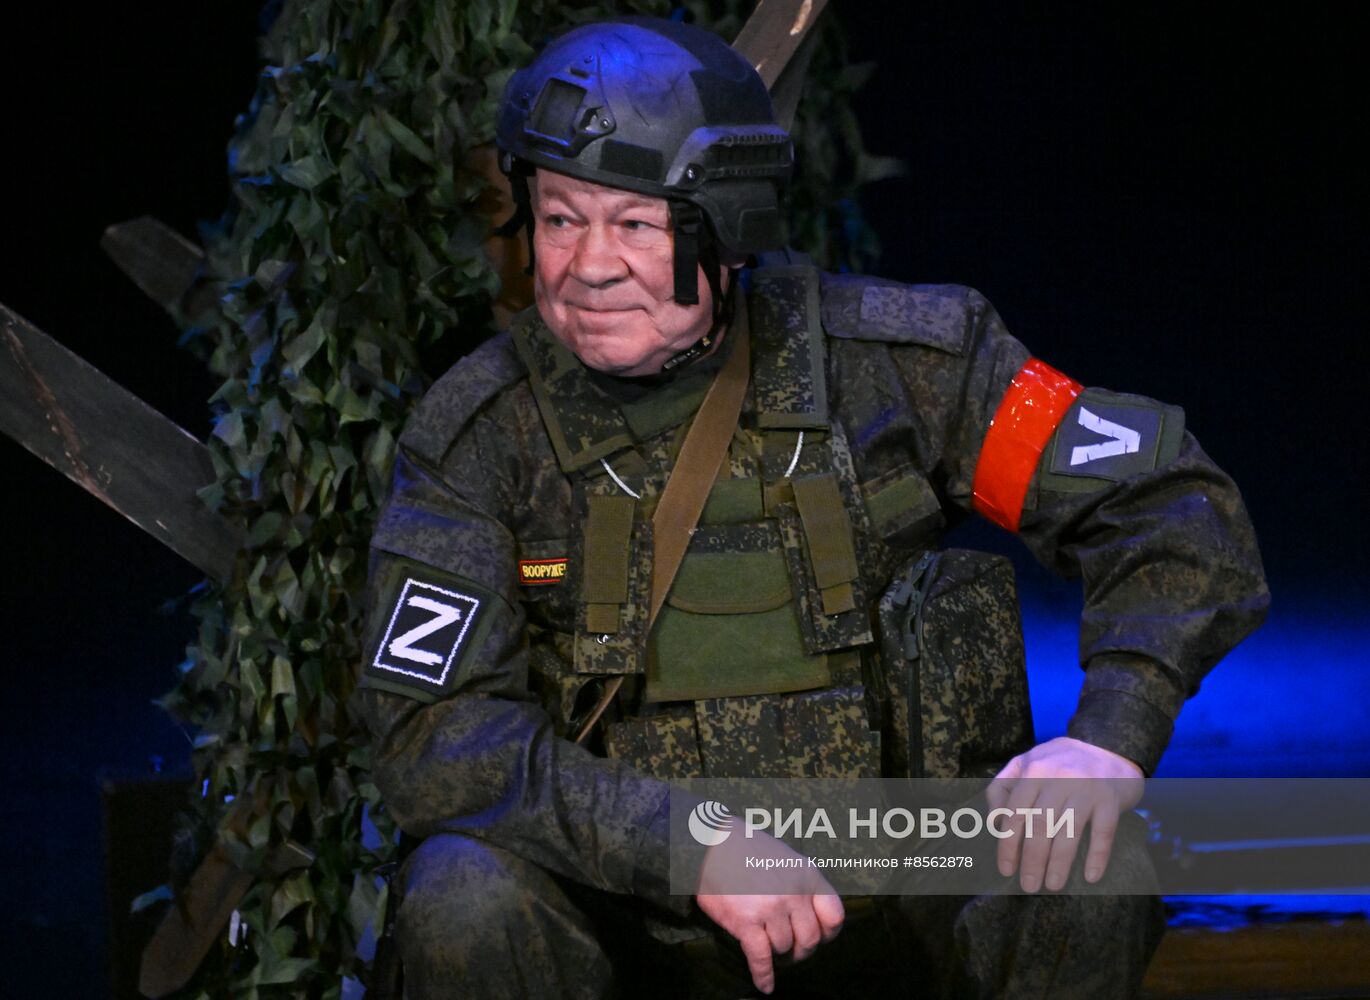 Спектакль "Данькина каска" в театре Российской Армии